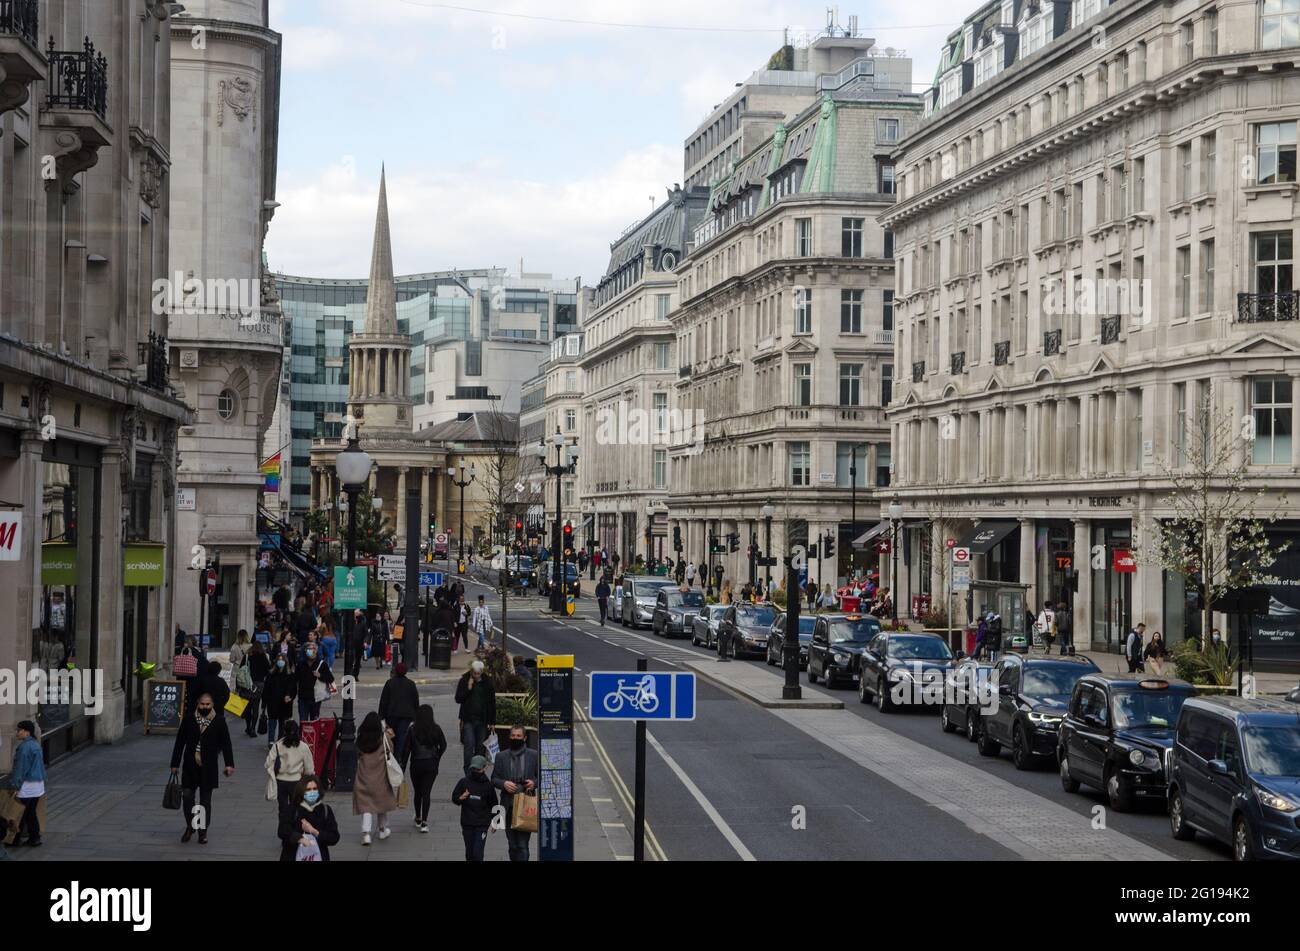 Londres, Royaume-Uni - 16 avril 2021 : vue panoramique des acheteurs et de la circulation sur Upper Regent Street, Fitzrovia, Londres. Banque D'Images